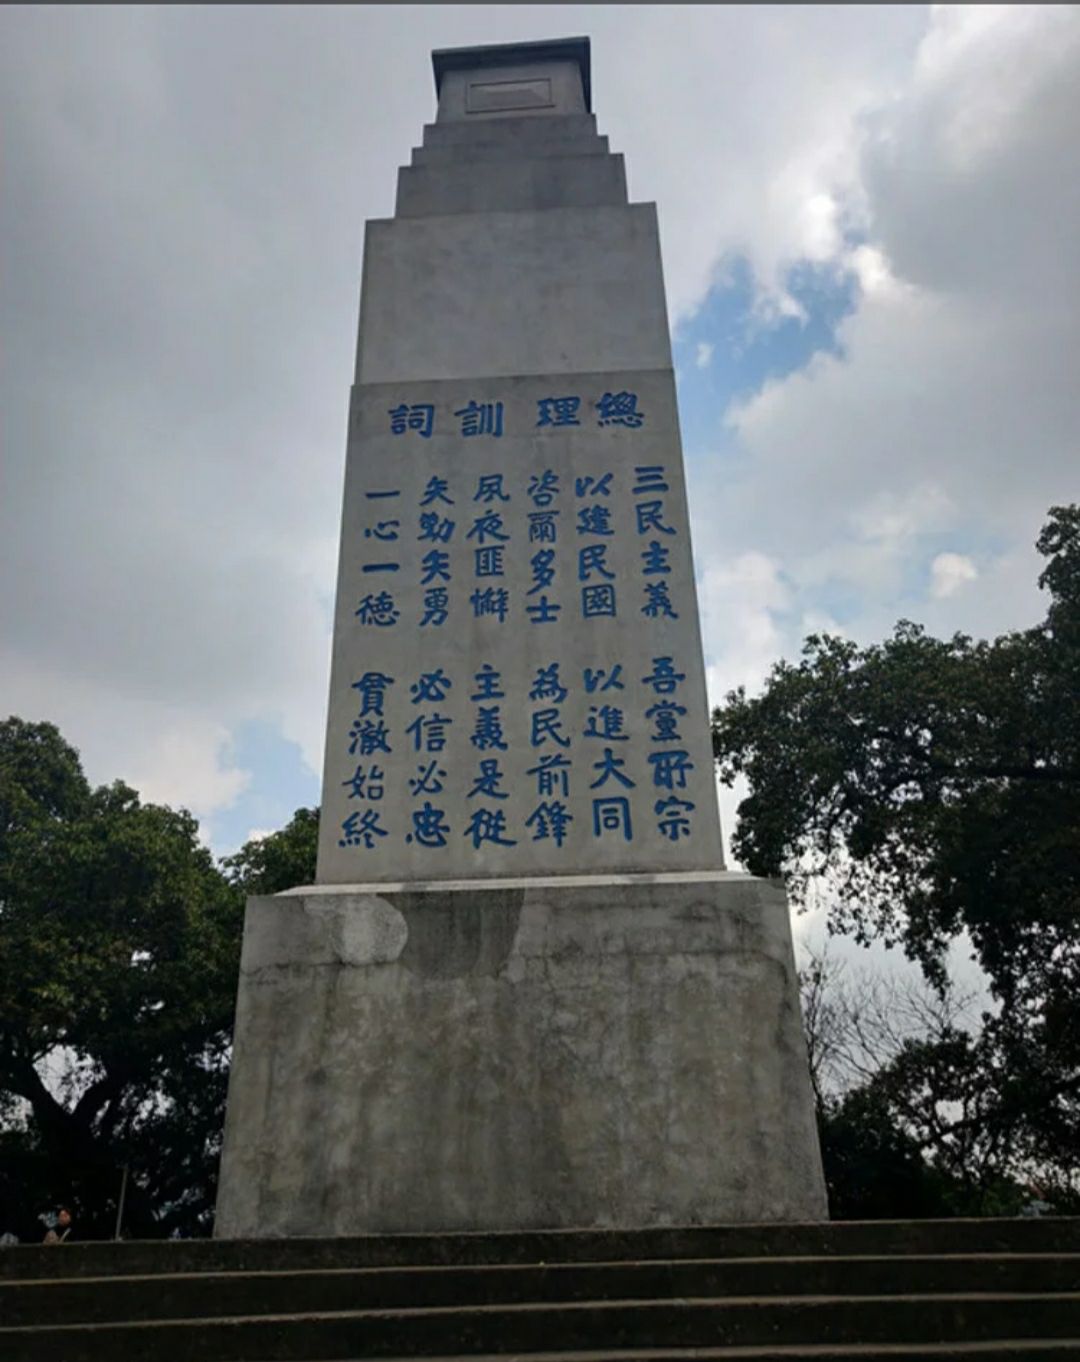 【携程攻略】广州黄埔军校旧址纪念馆景点,黄埔军校位于长洲岛上,是中国近代史的一个标志，也被叫做中国的“西…